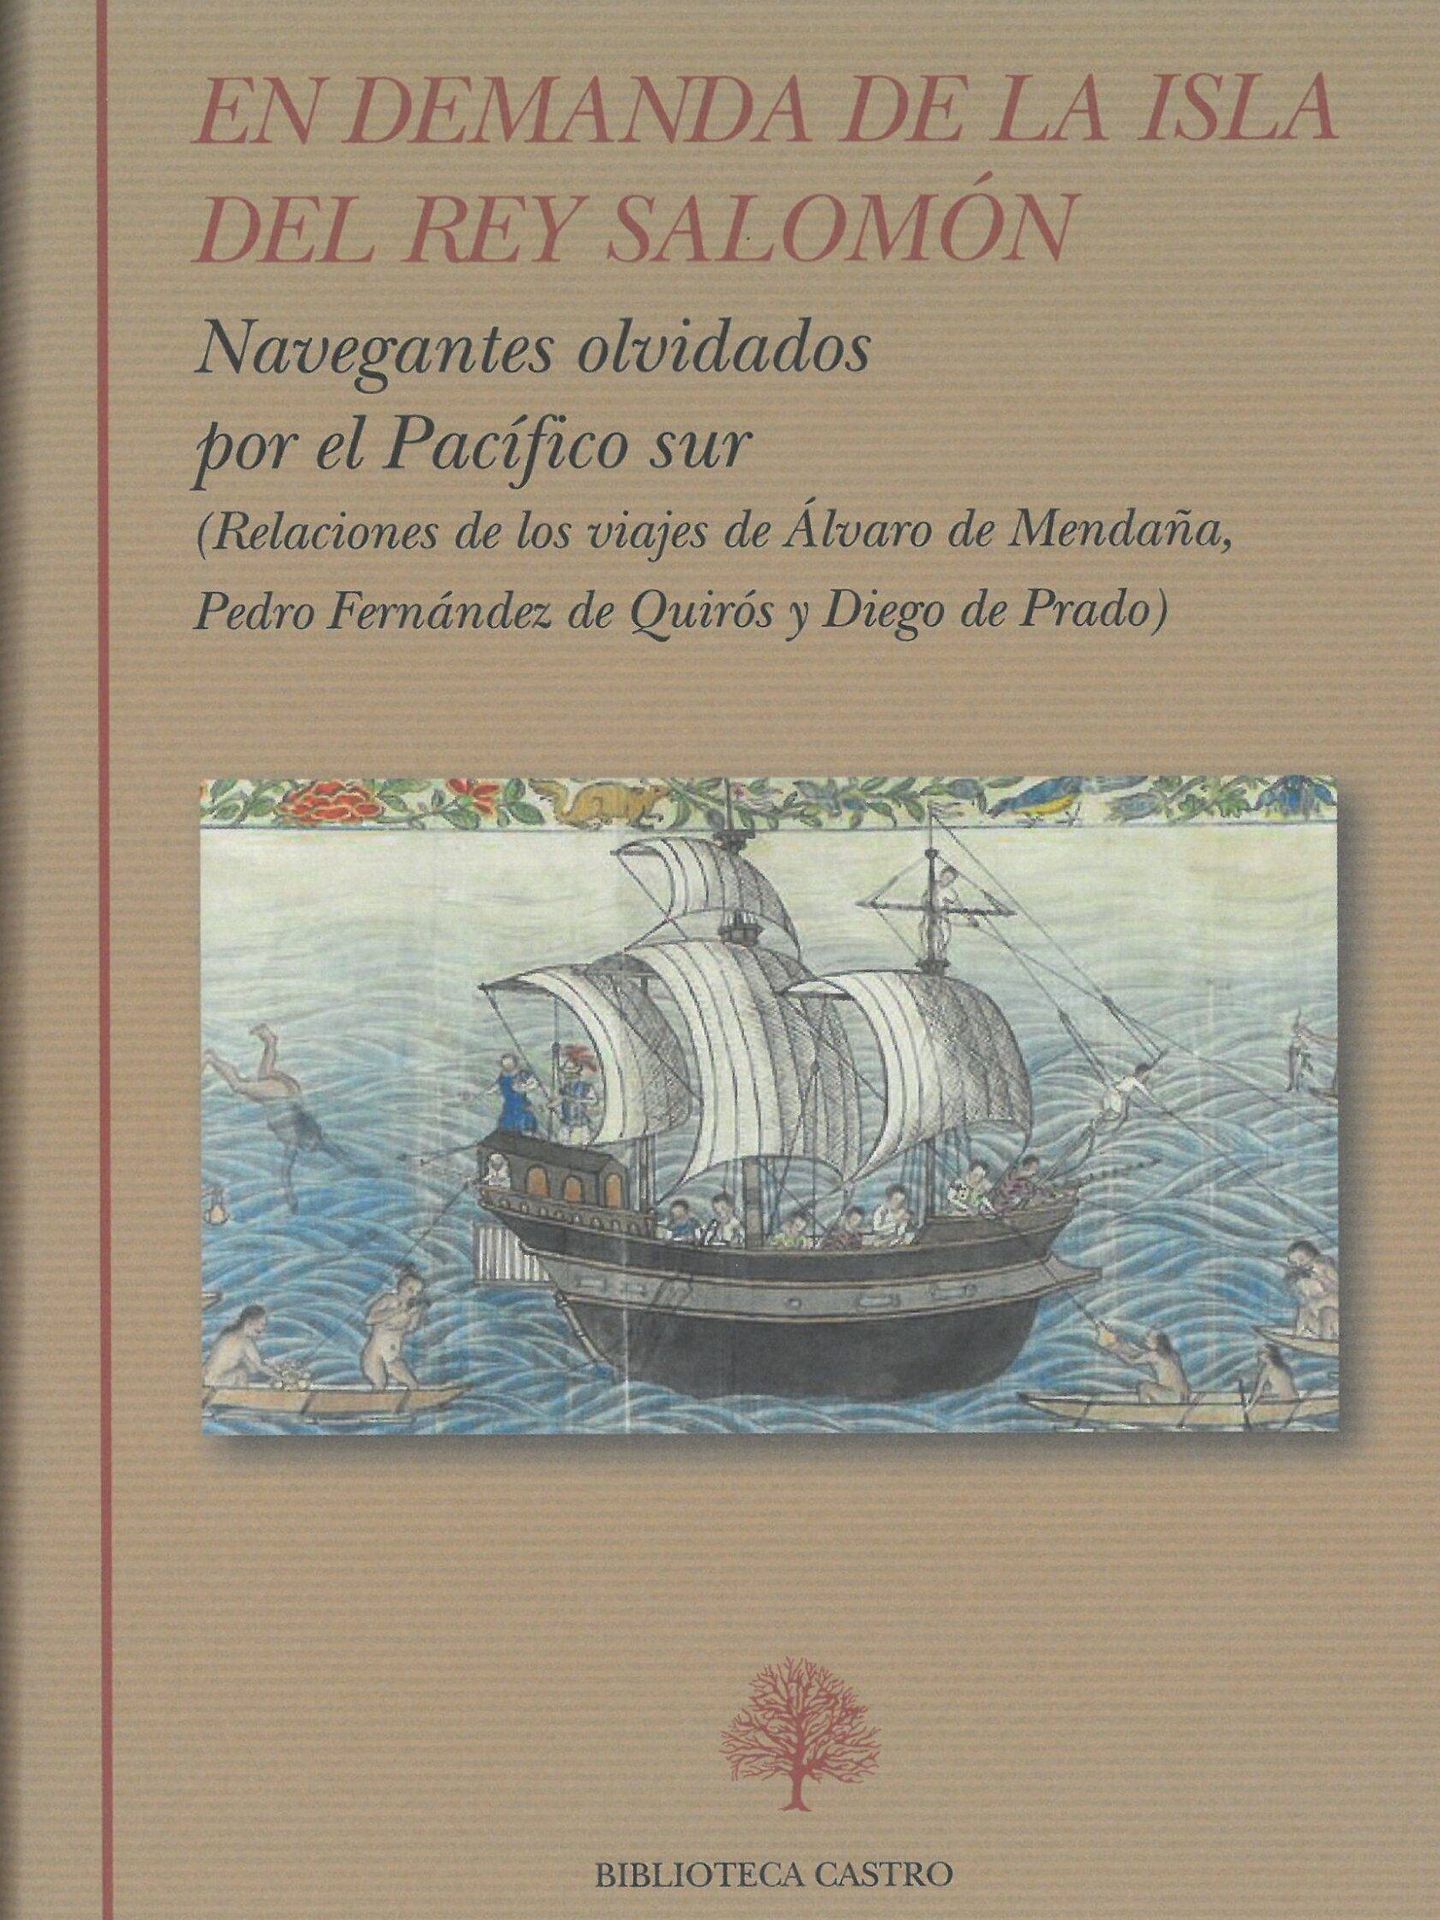 'En demanda de la isla del rey Salomón' (Biblioteca Castro)